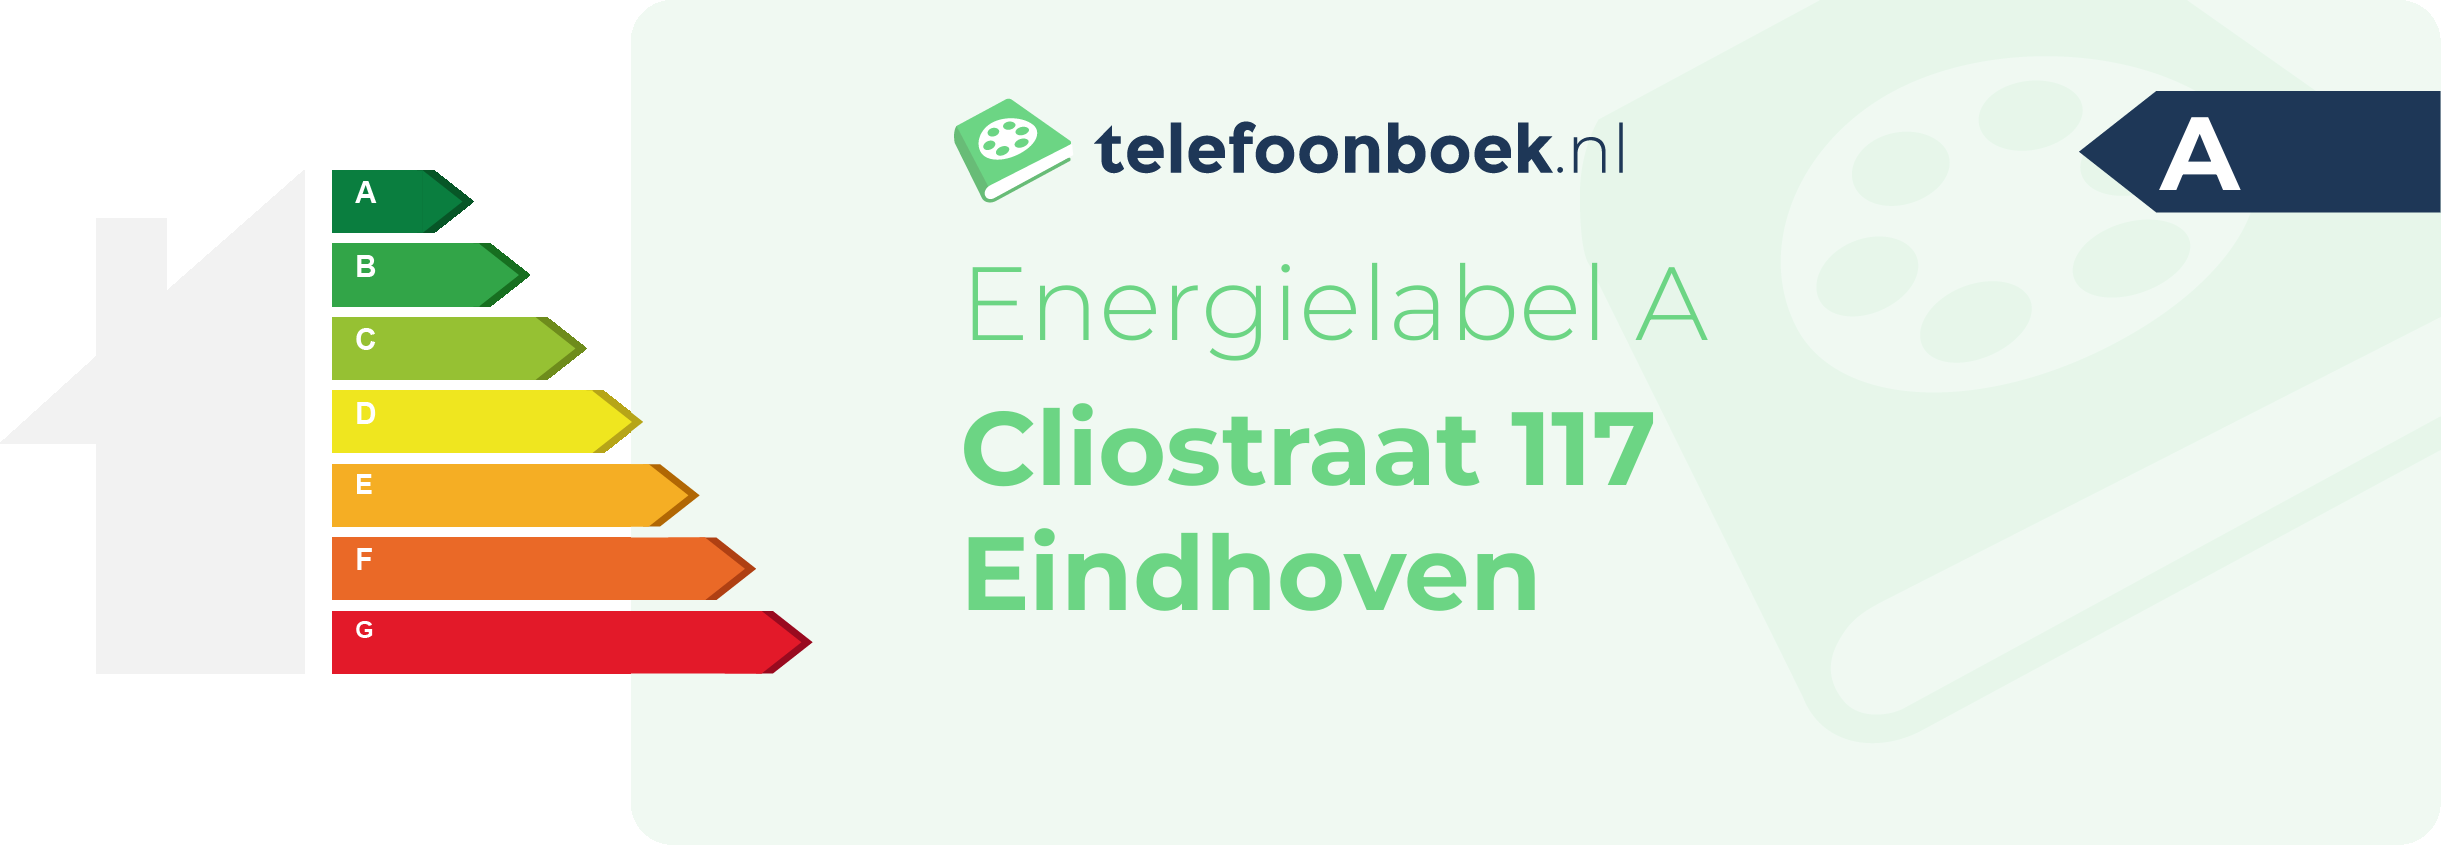 Energielabel Cliostraat 117 Eindhoven